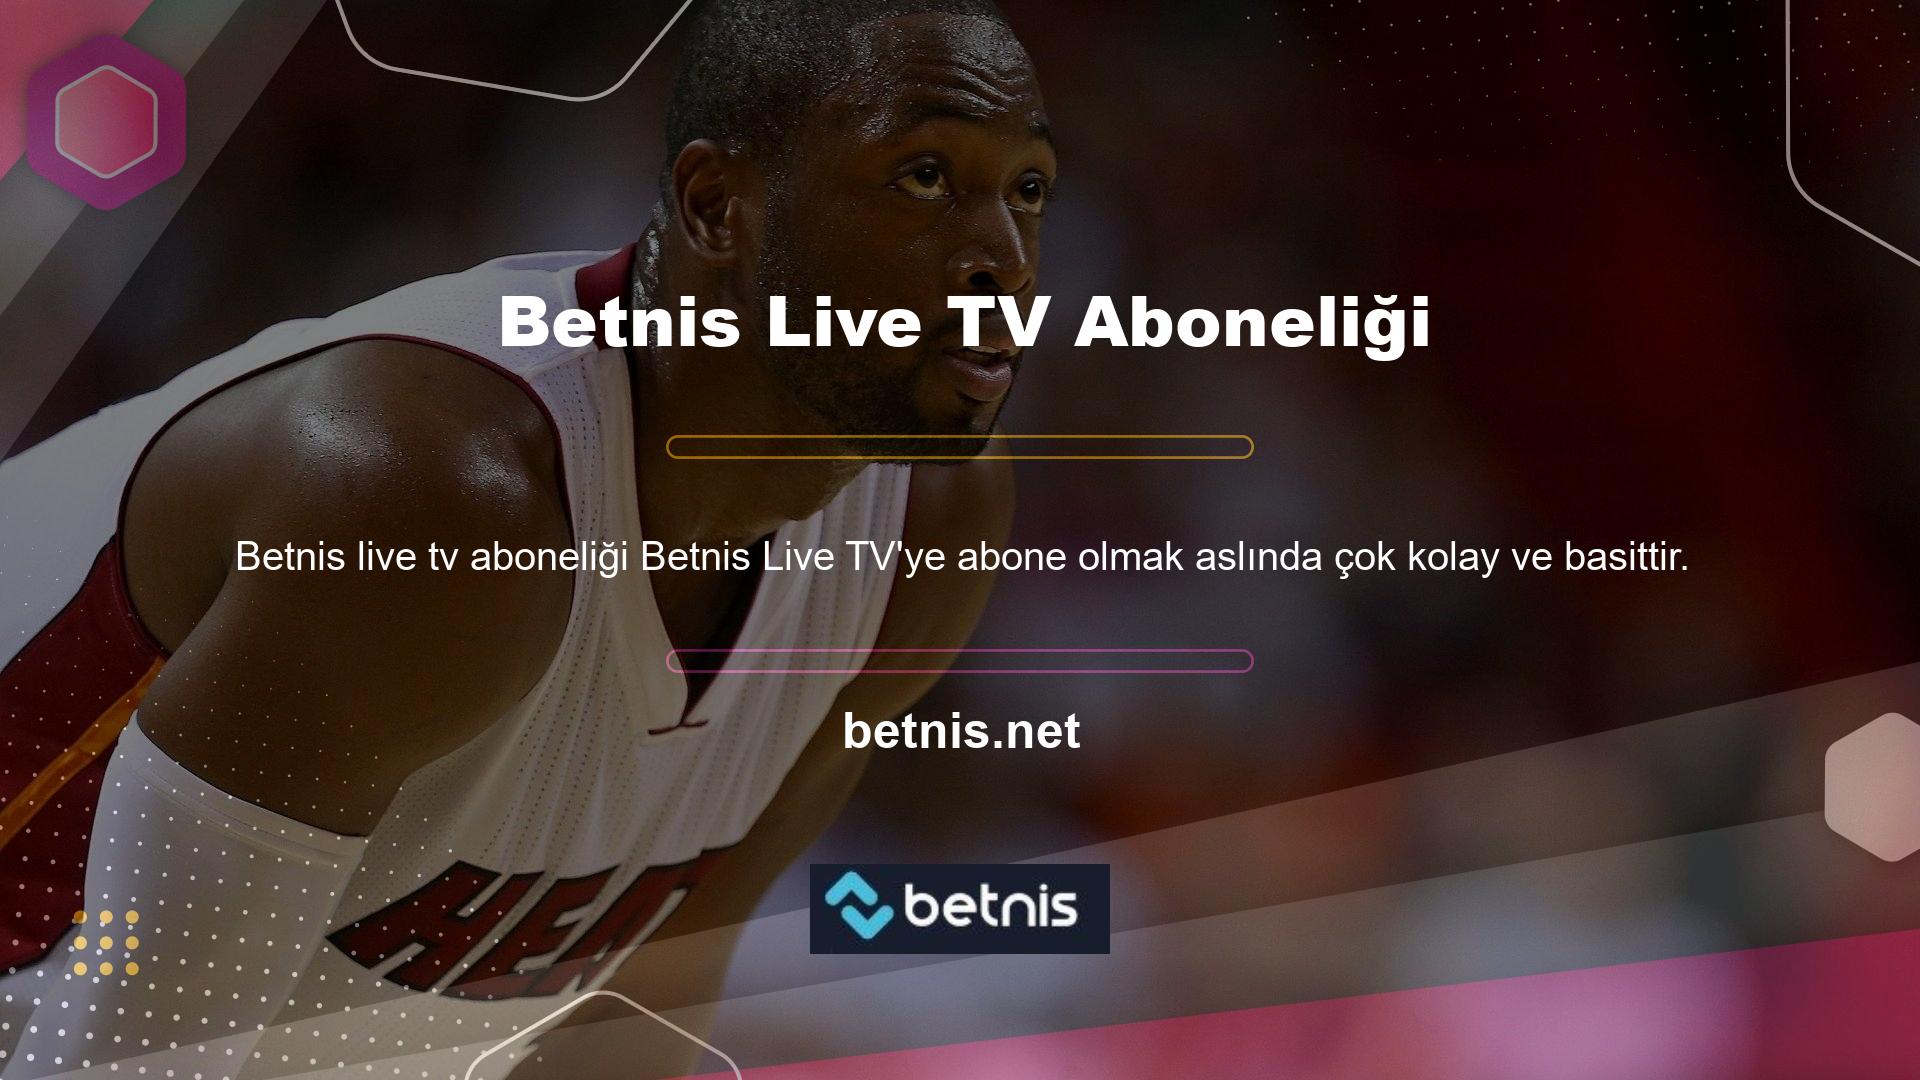 Betnis bahis sitesinde canlı TV'ye katılım için herhangi bir ücret talep edilmemektedir